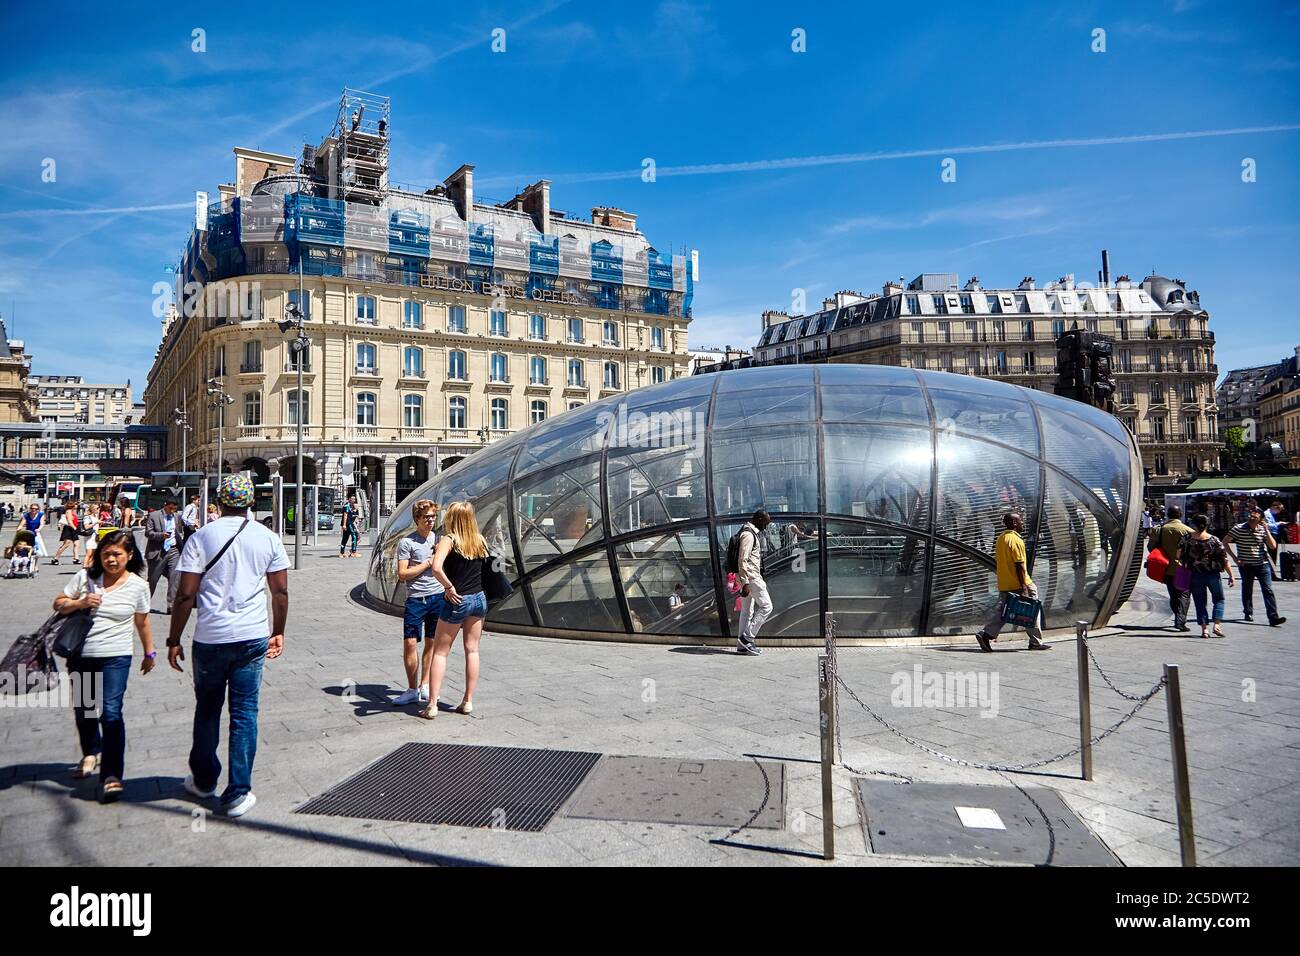 Paris, France - June 29, 2015: Cour de Rome. Modern glass entrance to Saint-Lazare metro station Stock Photo